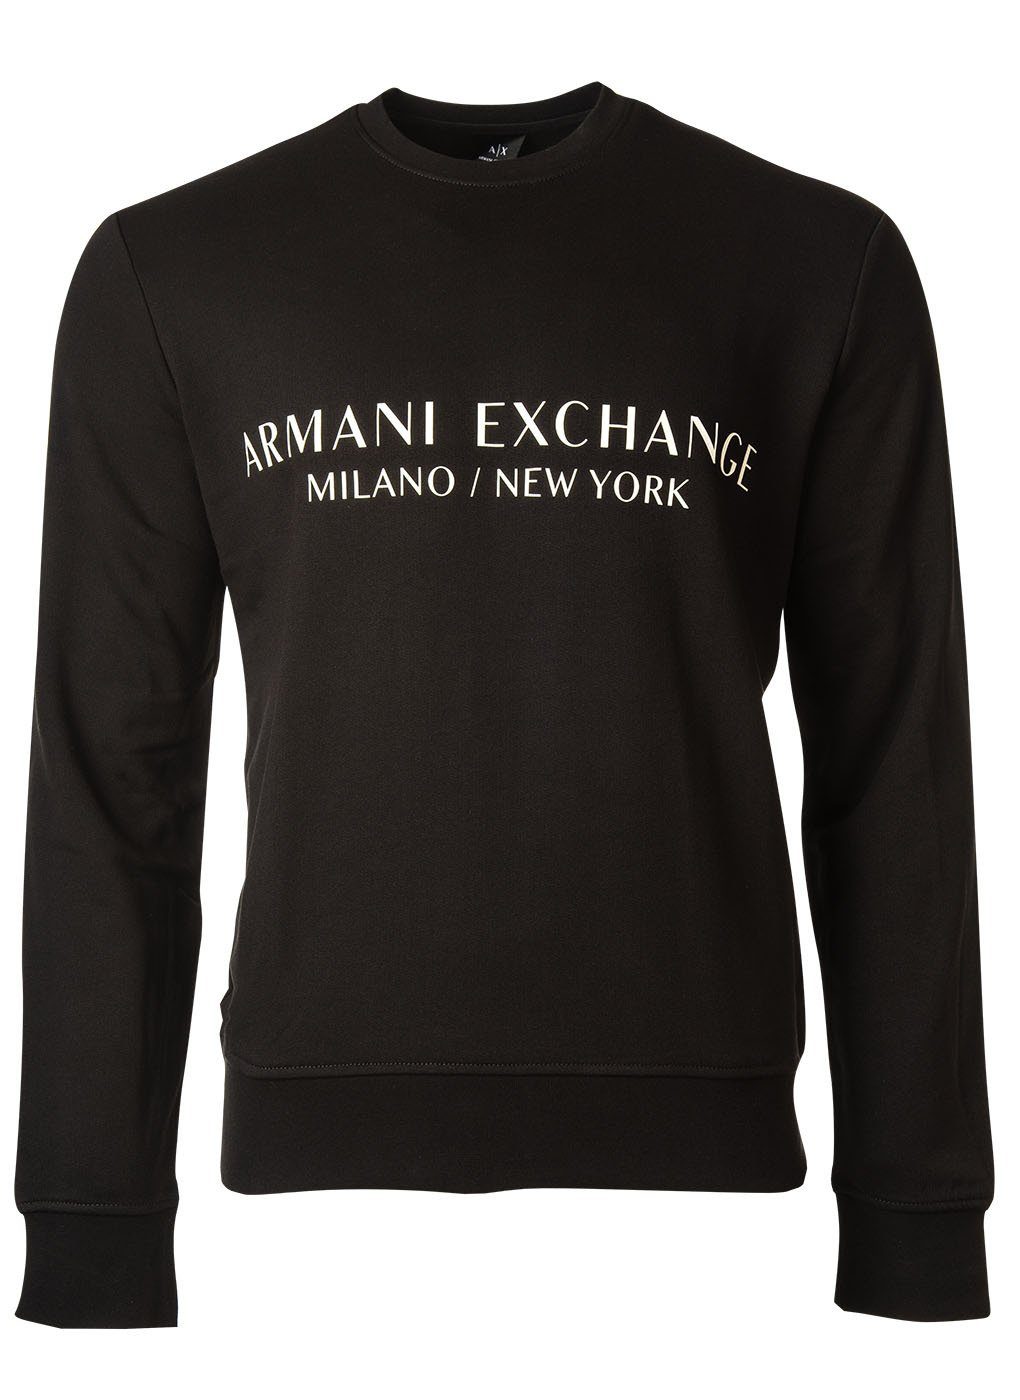 ARMANI EXCHANGE Sweatshirt Herren Sweatshirt - Pullover, Logo Schwarz